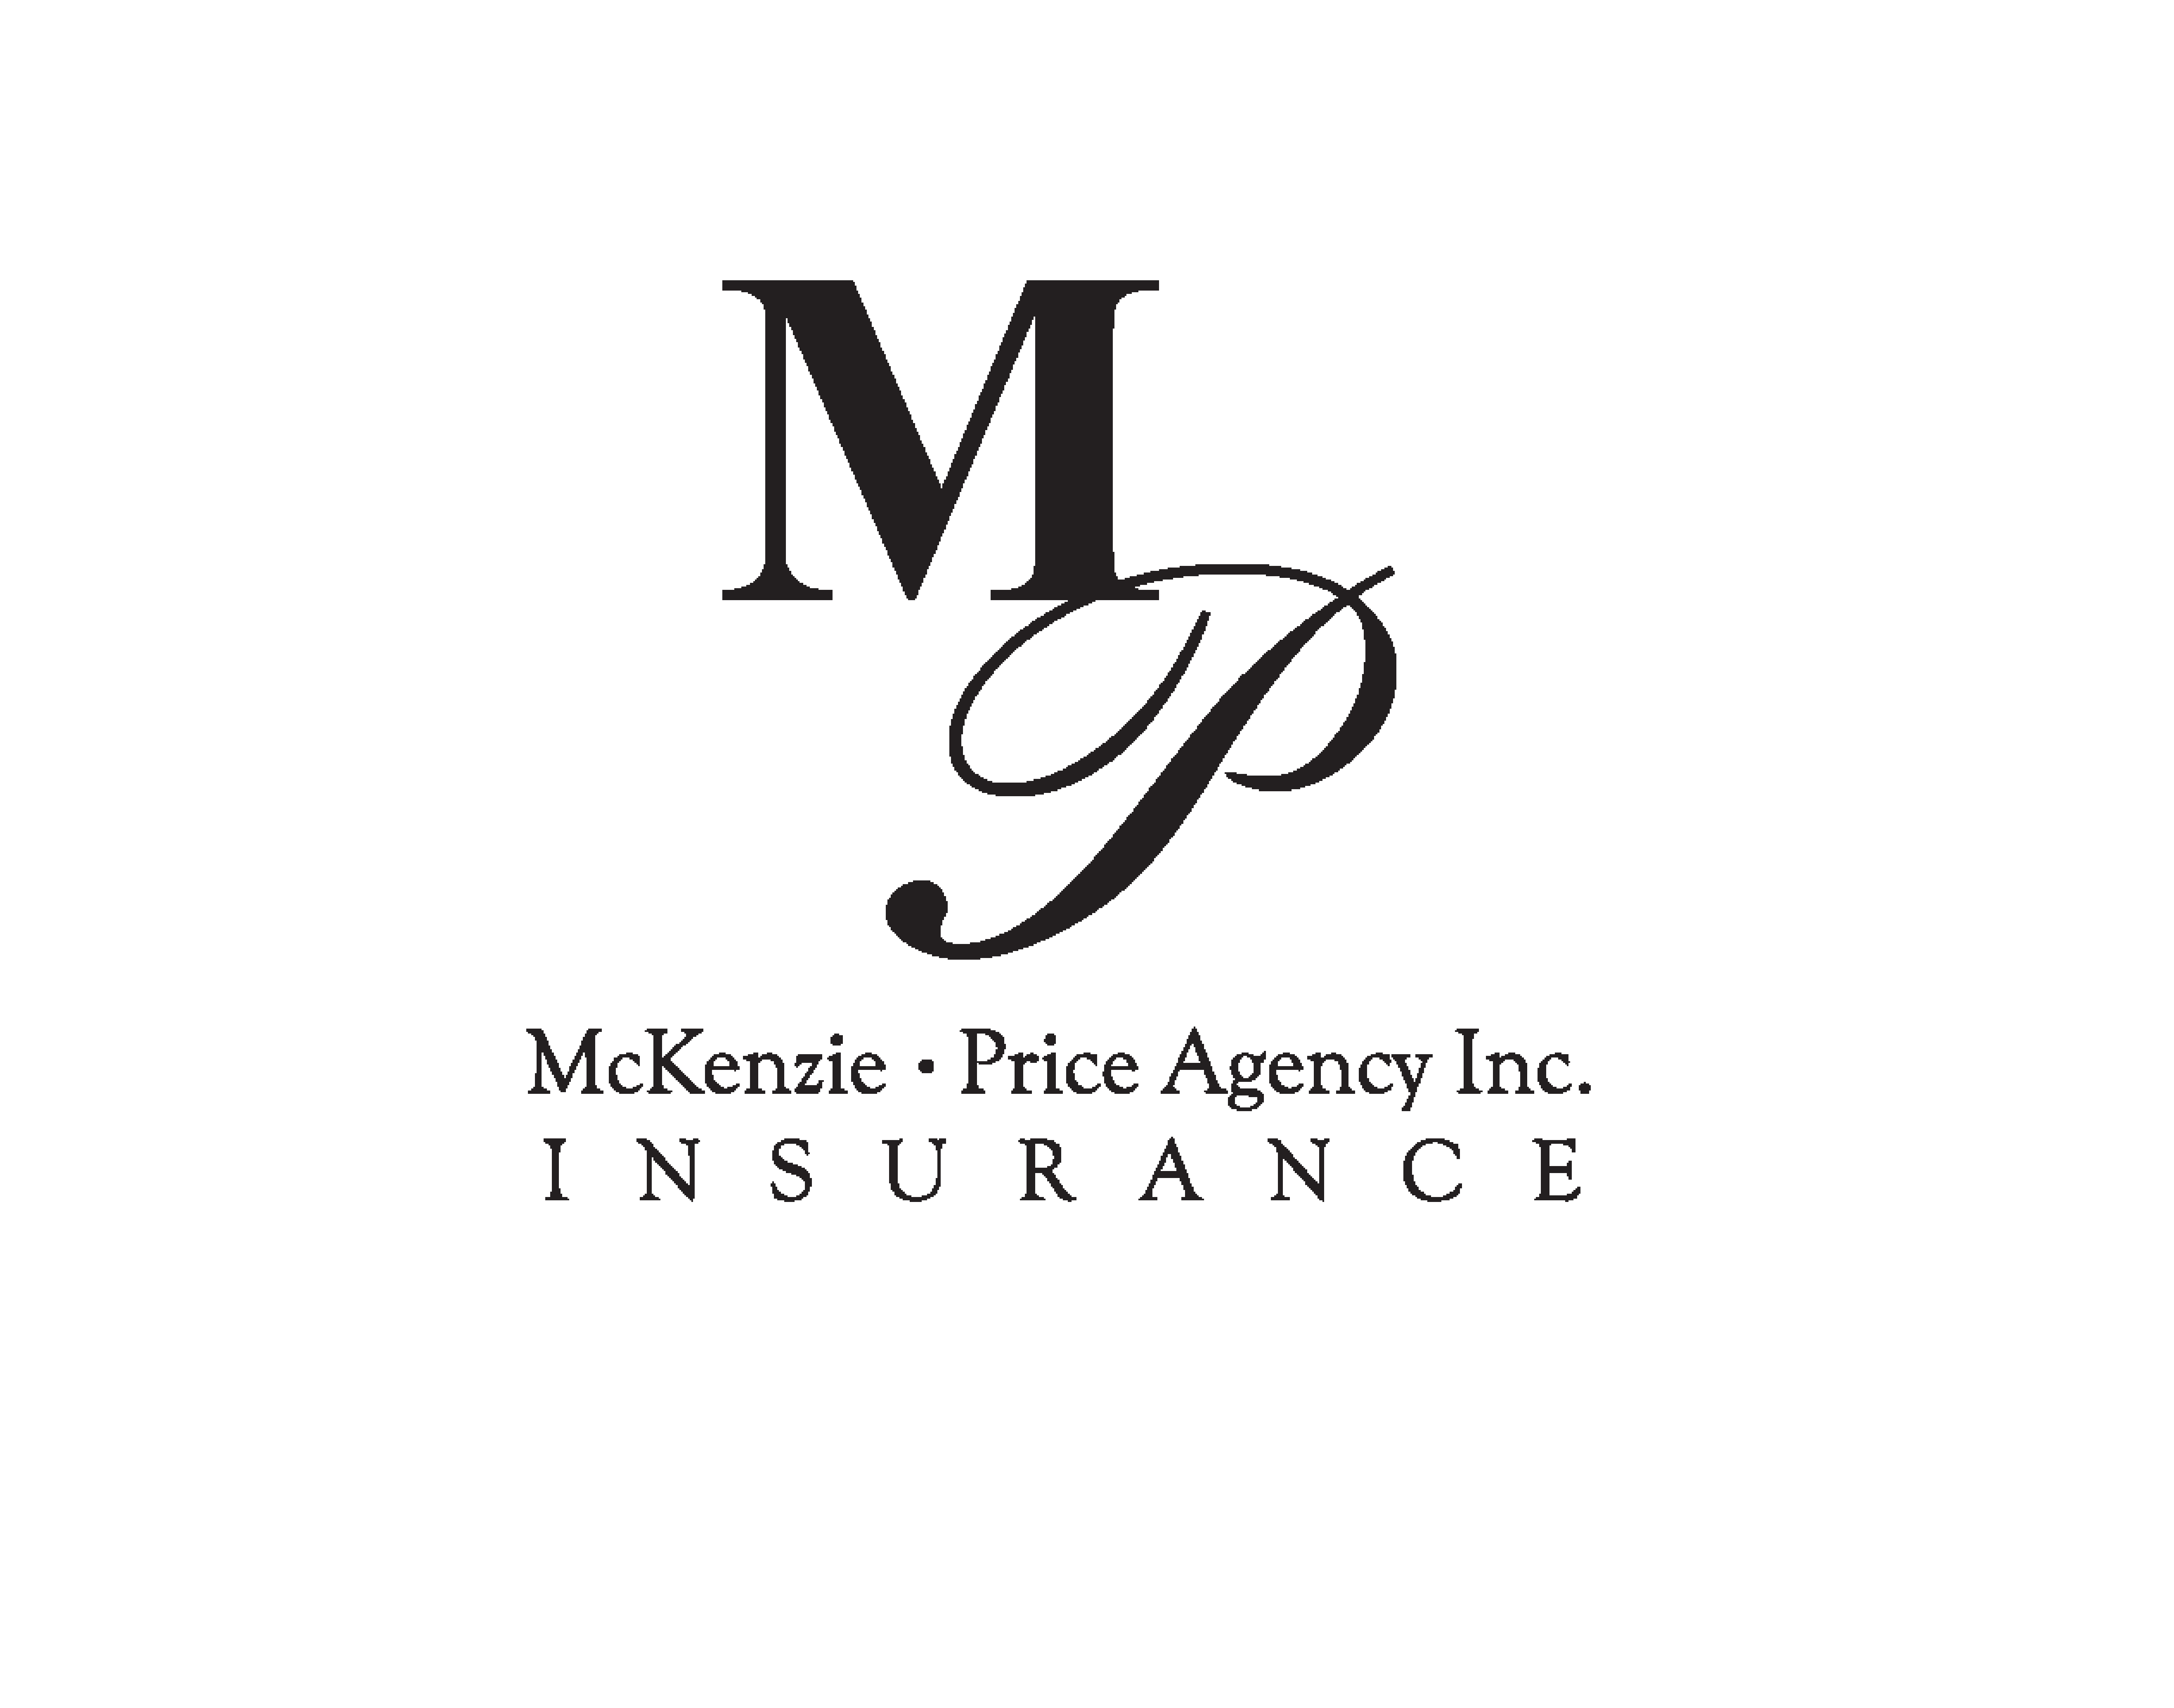 McKenzie-Price Agency Inc.